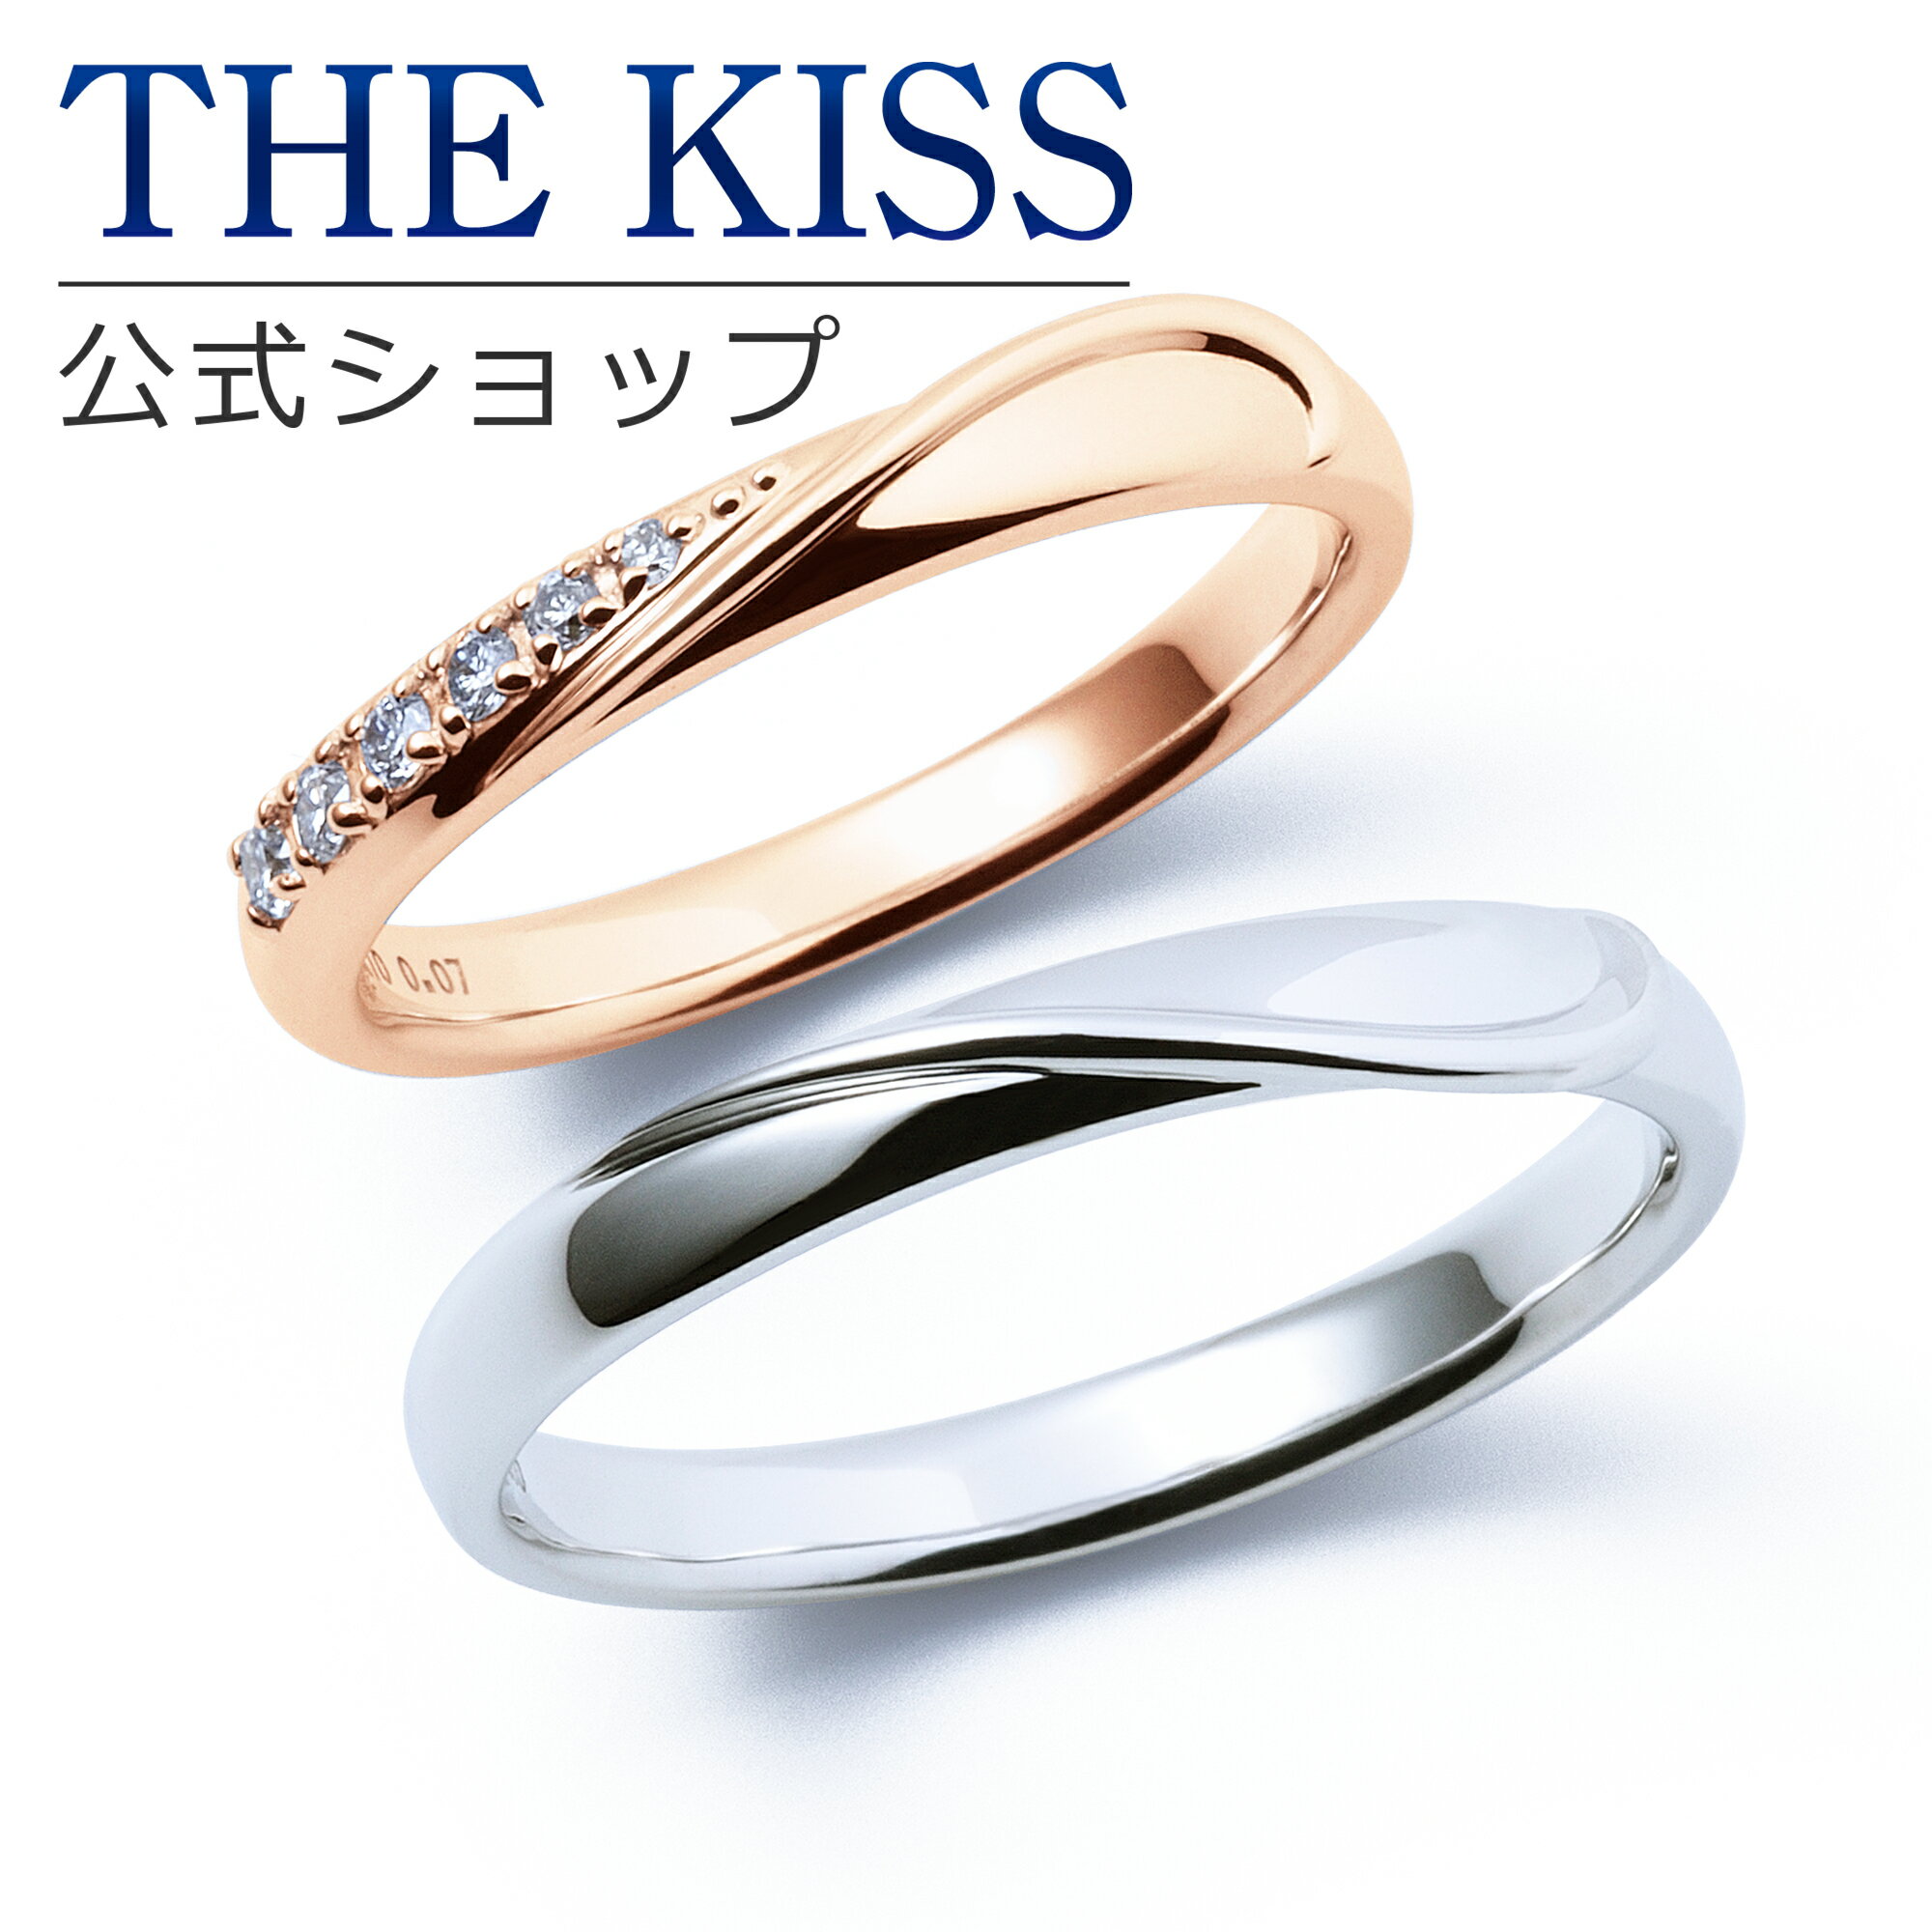 【ラッピング無料】【刻印無料】【THE KISS Anniversary】 K10 ピンクゴールド ホワイトゴールド マリッジ リング 結婚指輪 ペアリング pg wg THE KISS ザキッス リング・指輪 7081122011-7621122012 セット シンプル 男性 女性 2個セット ブライダル